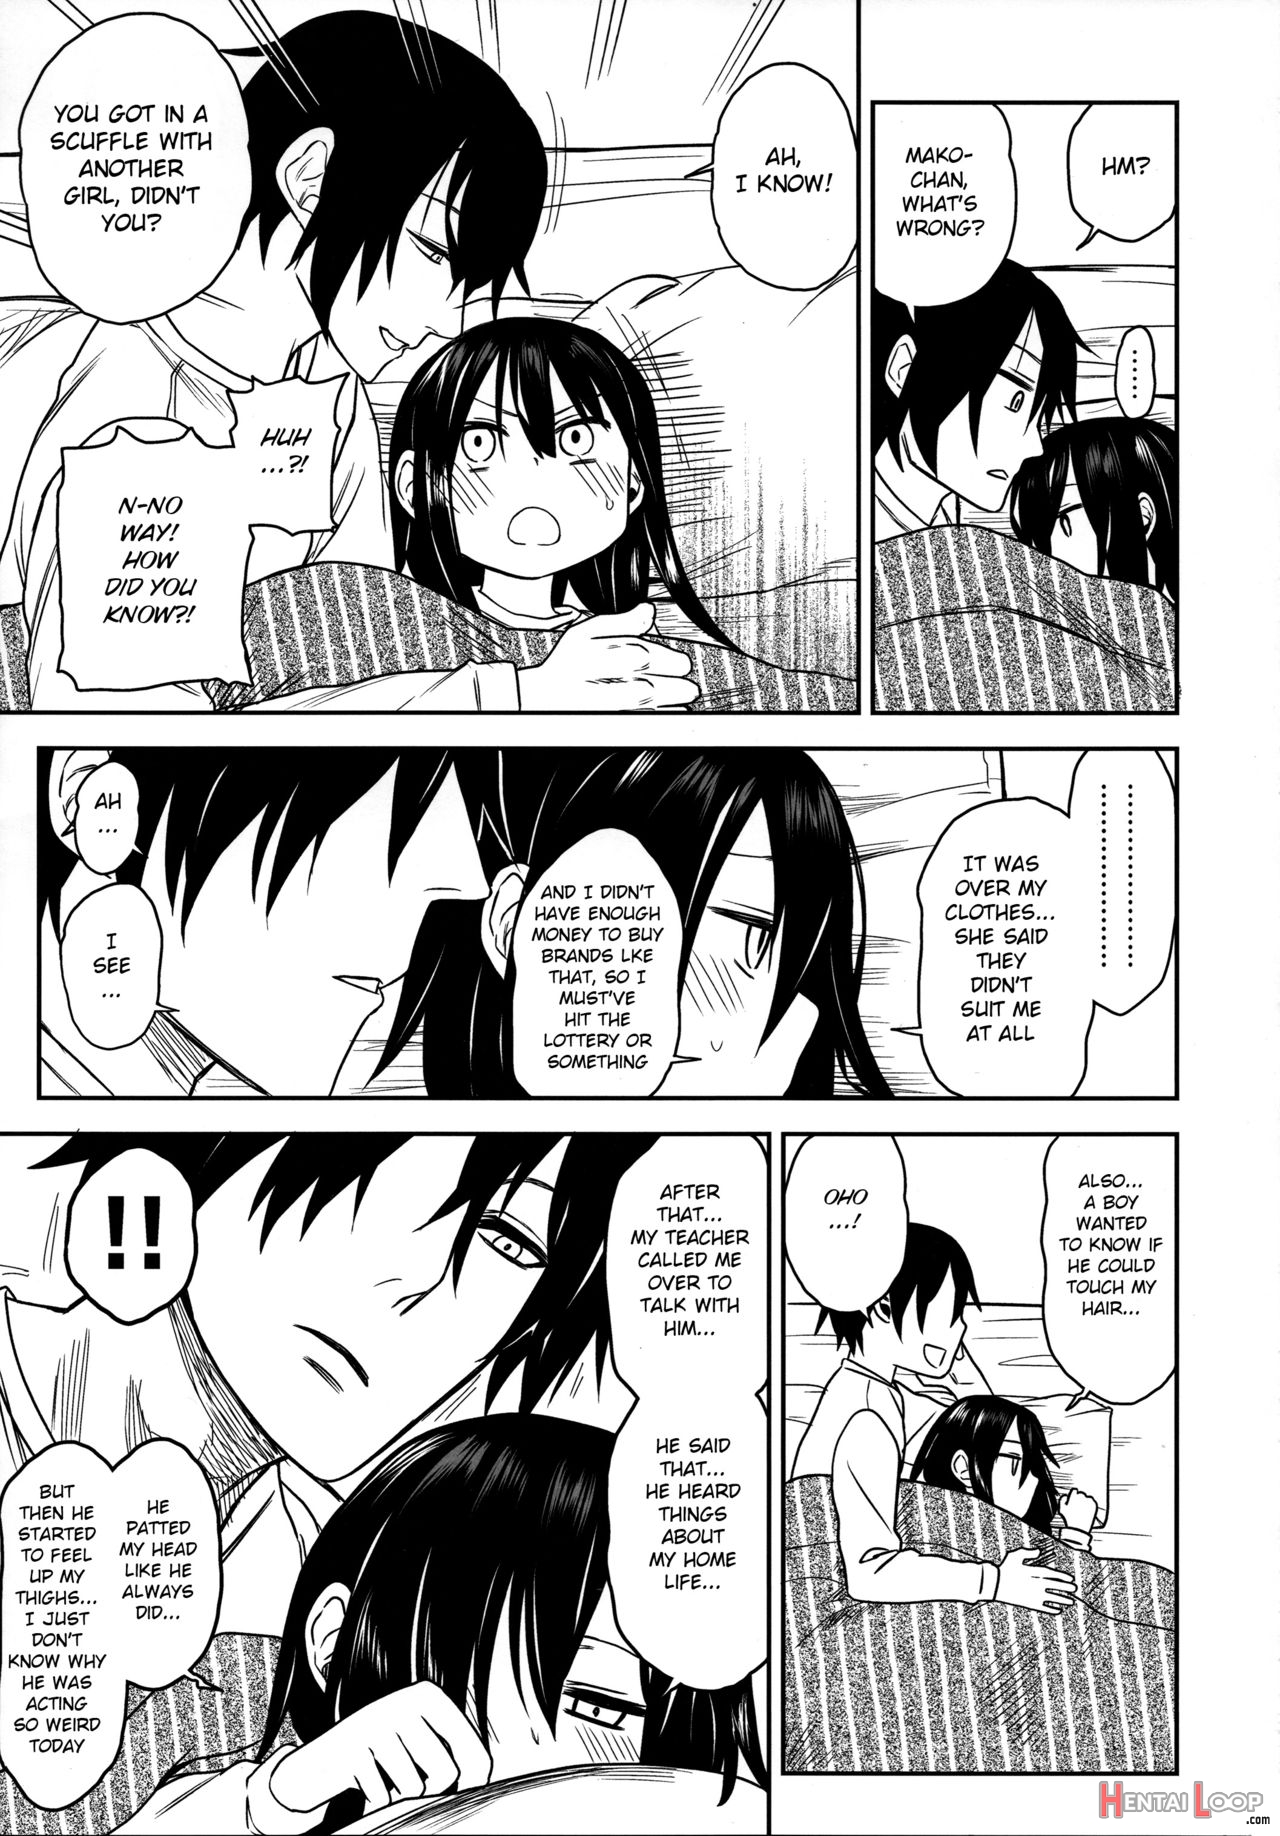 Tonari No Mako-chan Season 2 Vol. 2 page 37